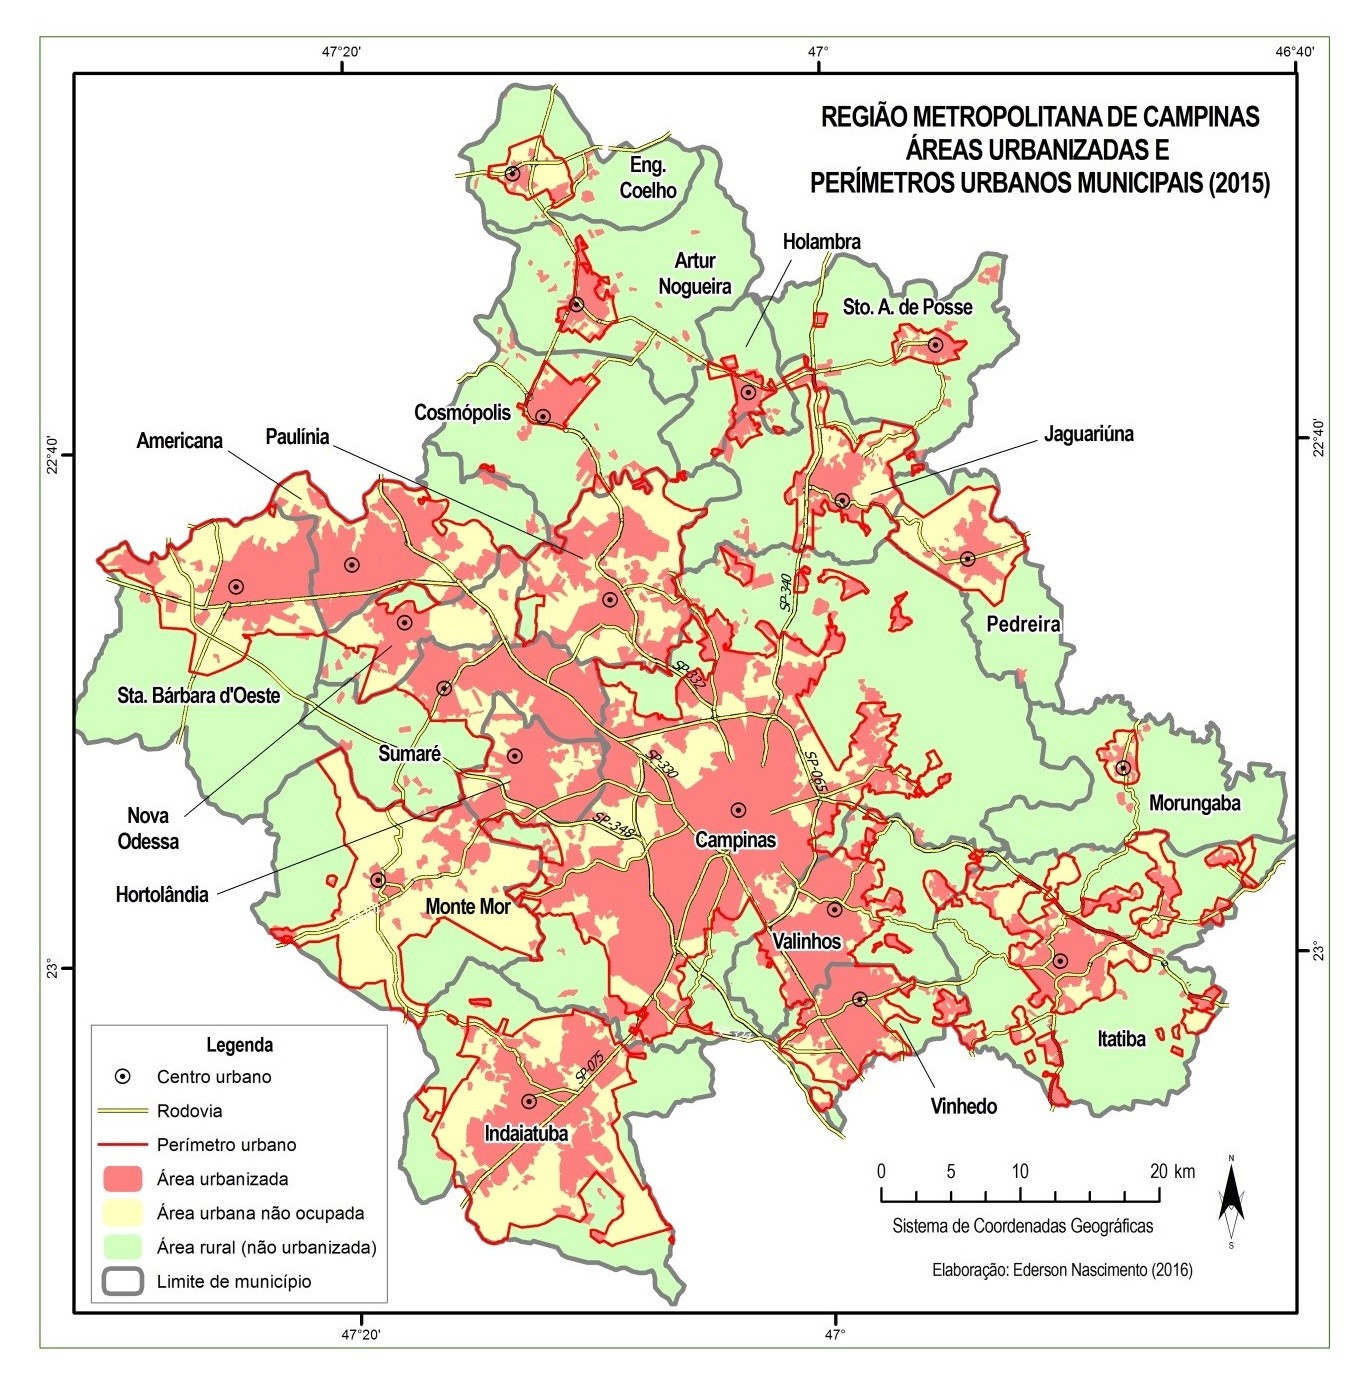 Figura 3. Áreas urbanizadas e perímetros urbanos municipais na RMC (2015).